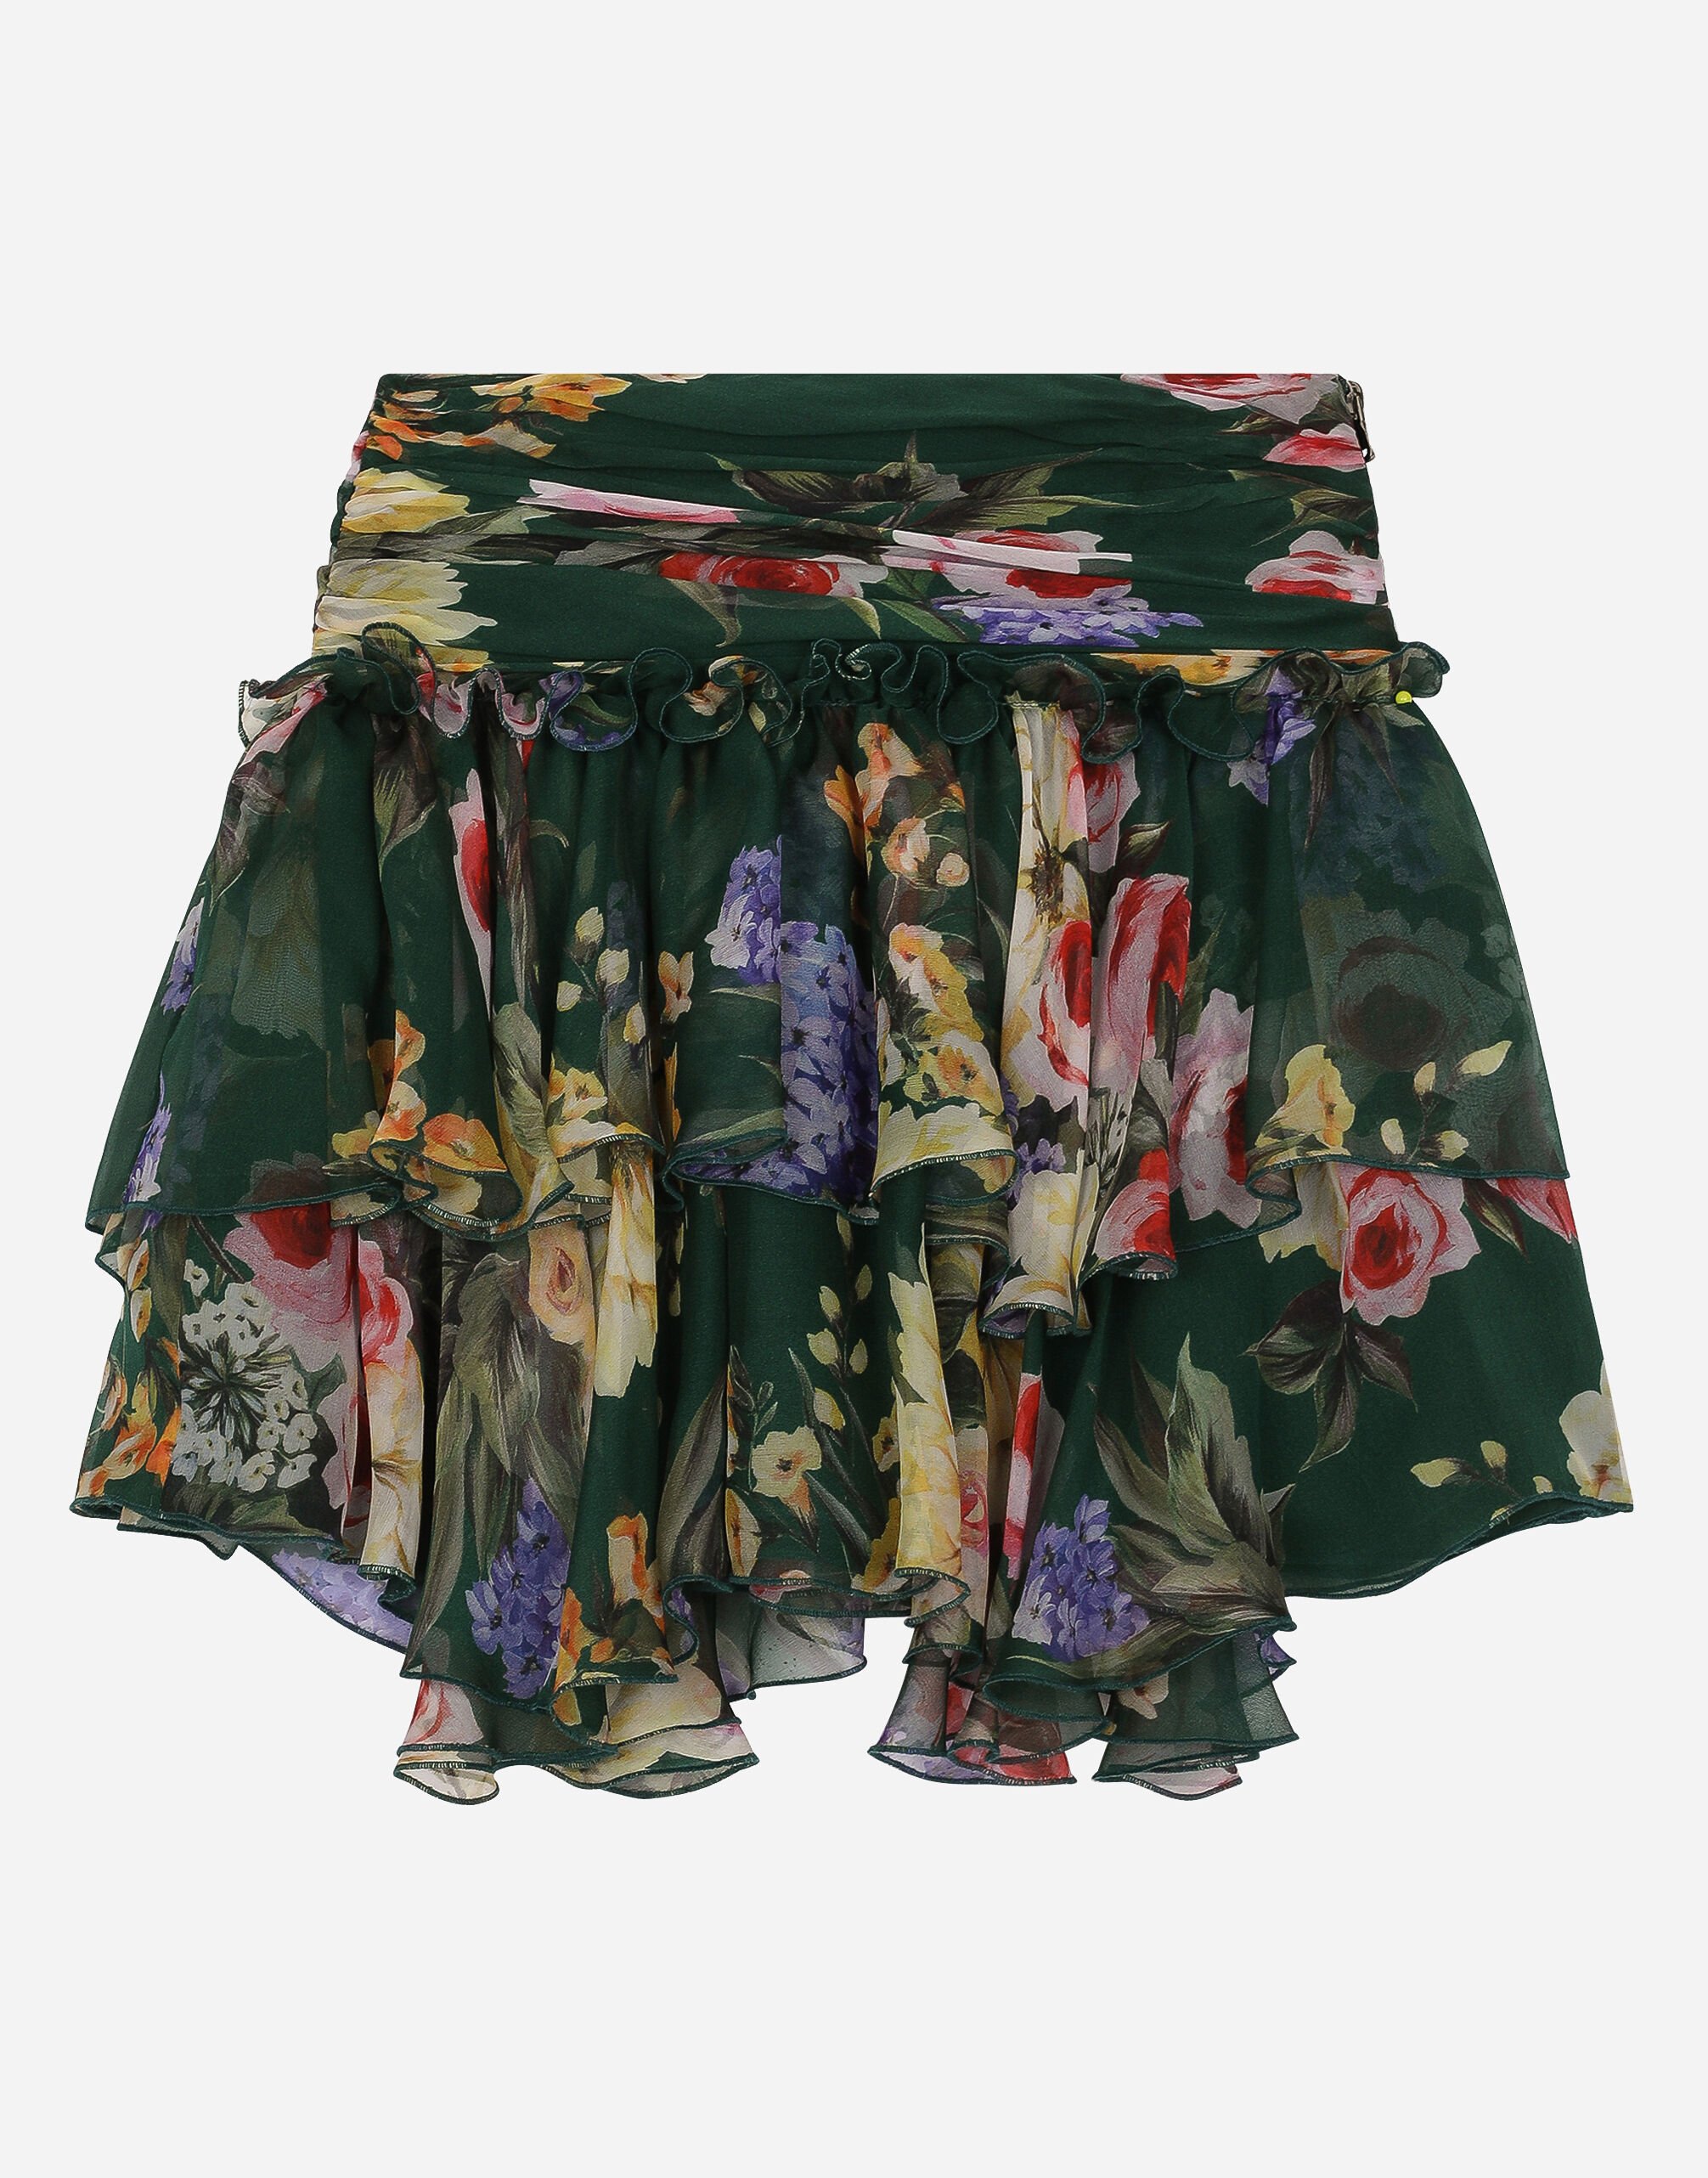 Dolce & Gabbana 花园印花雪纺短款半裙 版画 L54I94HS5Q4